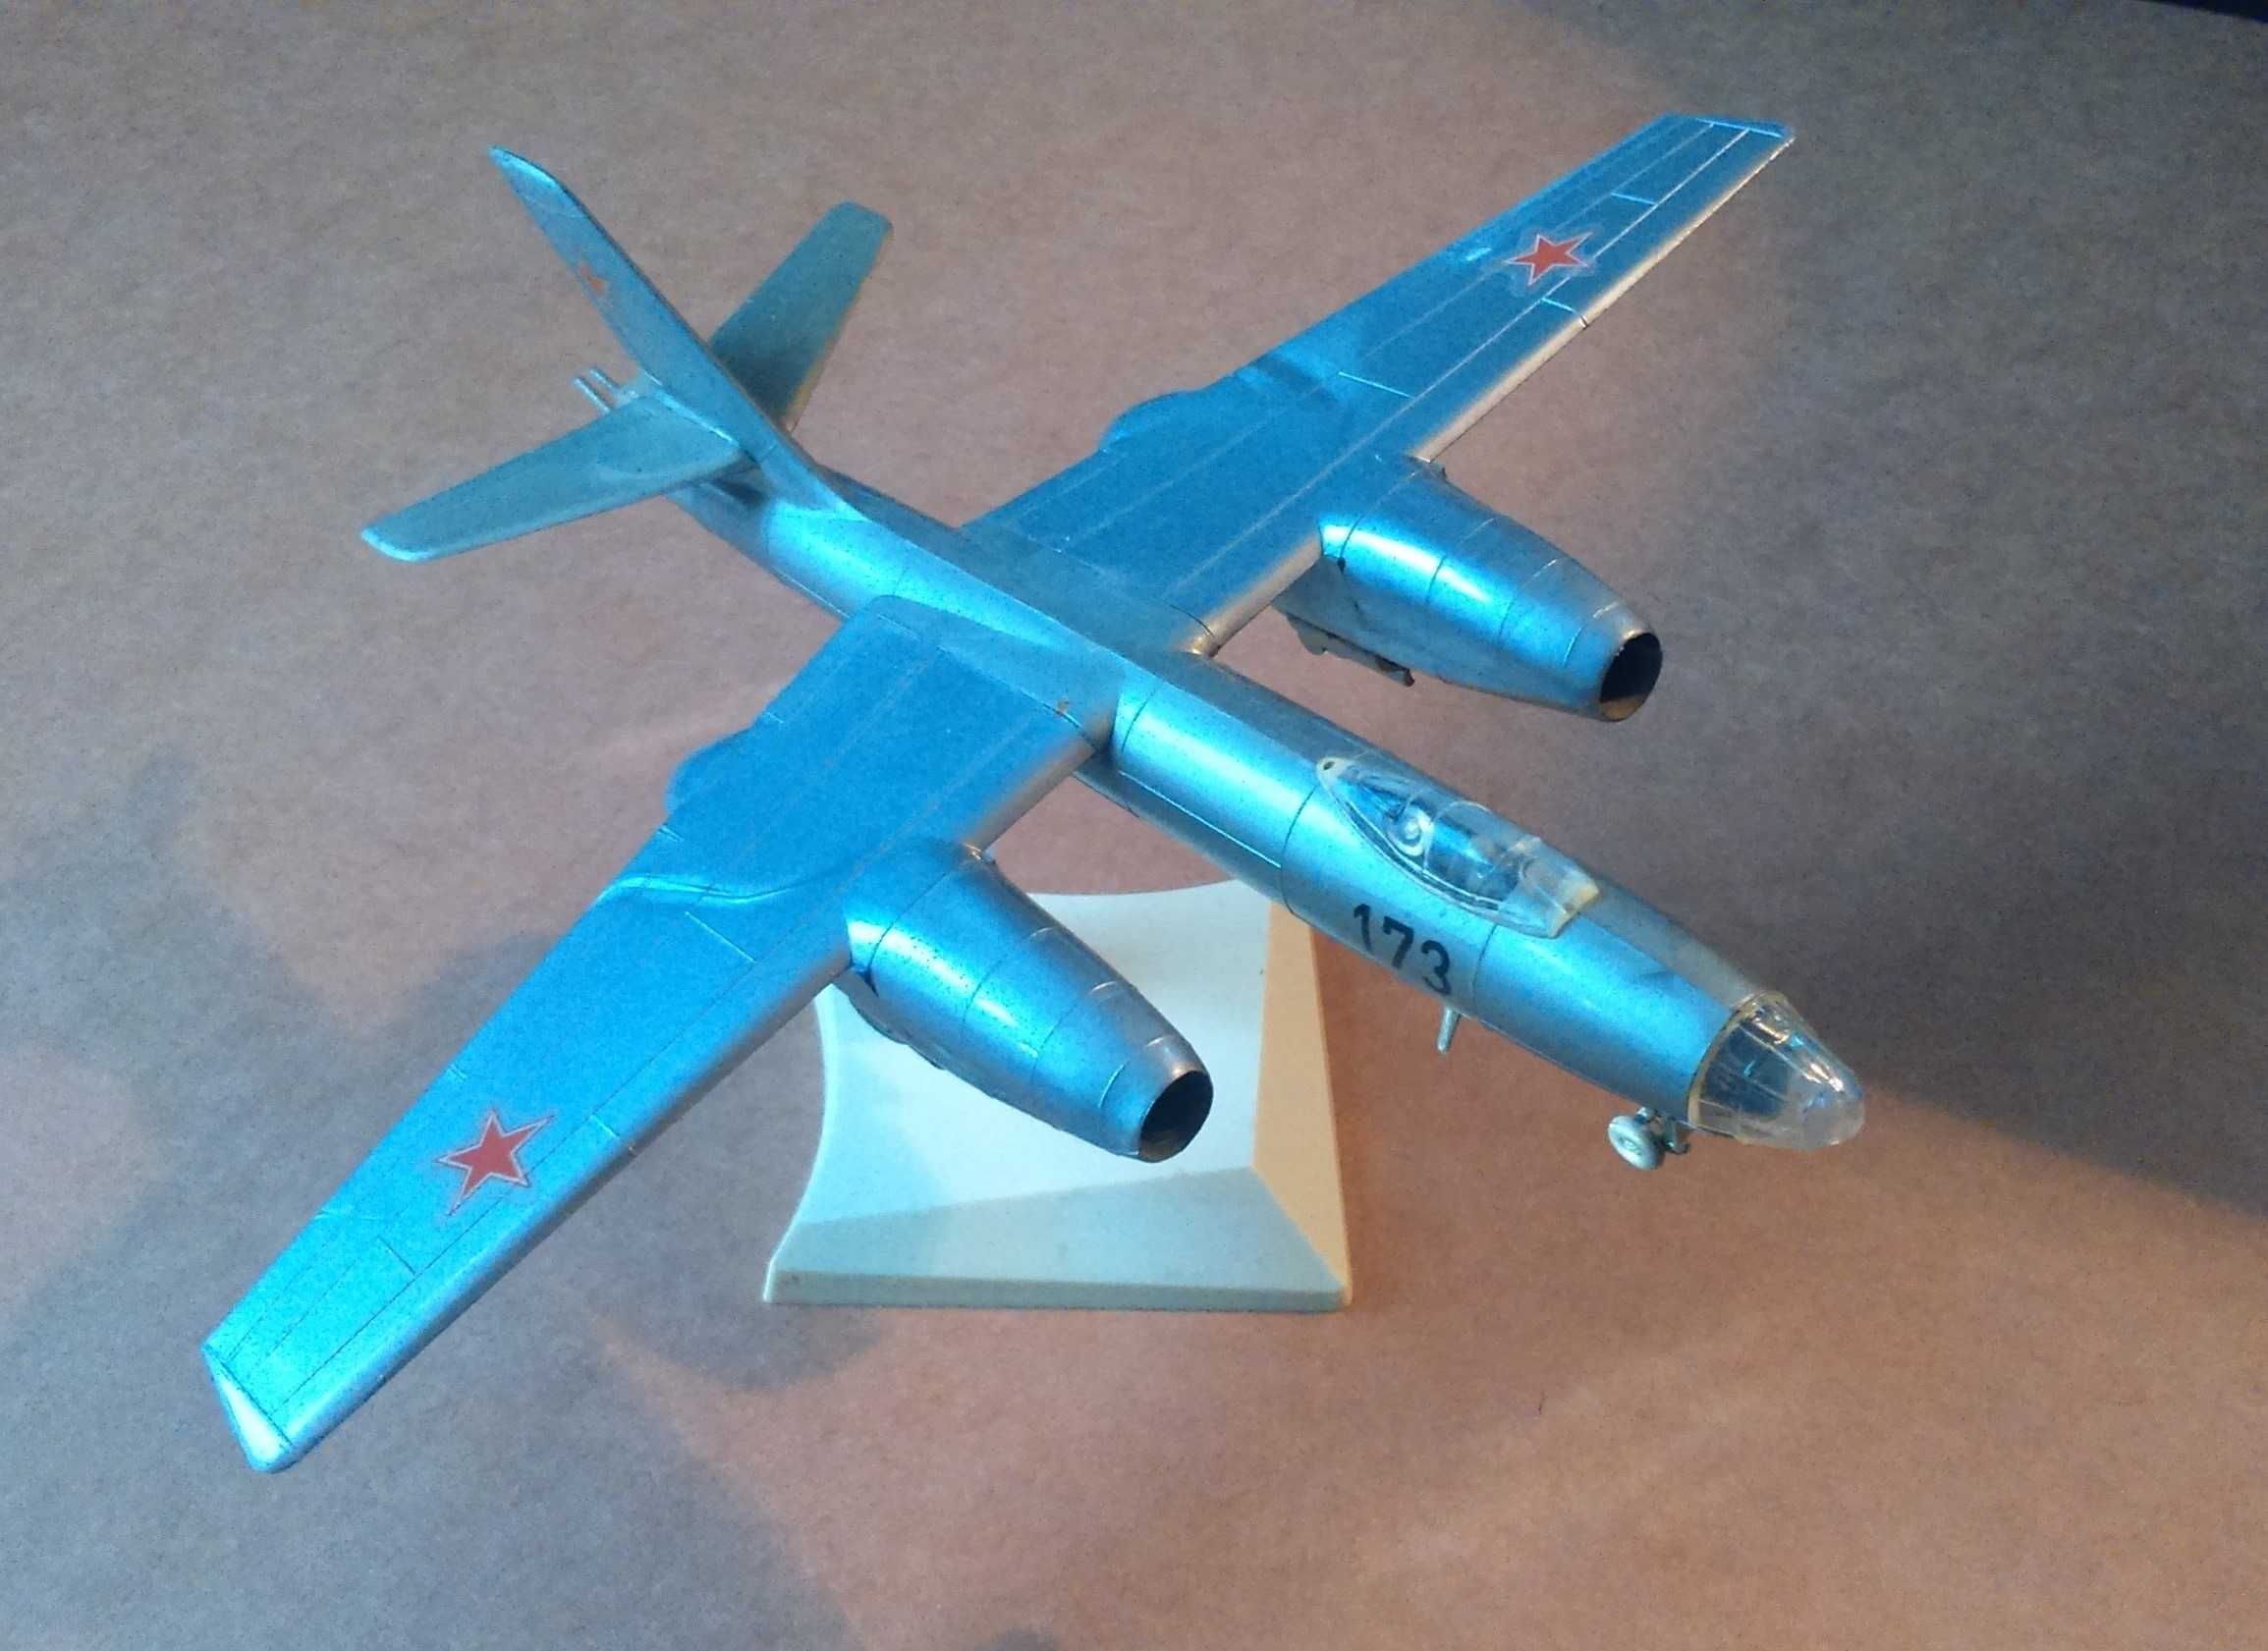 подарочная модель самолёта Ил-28 пр. VEB РАРИТЕТ из СССР!